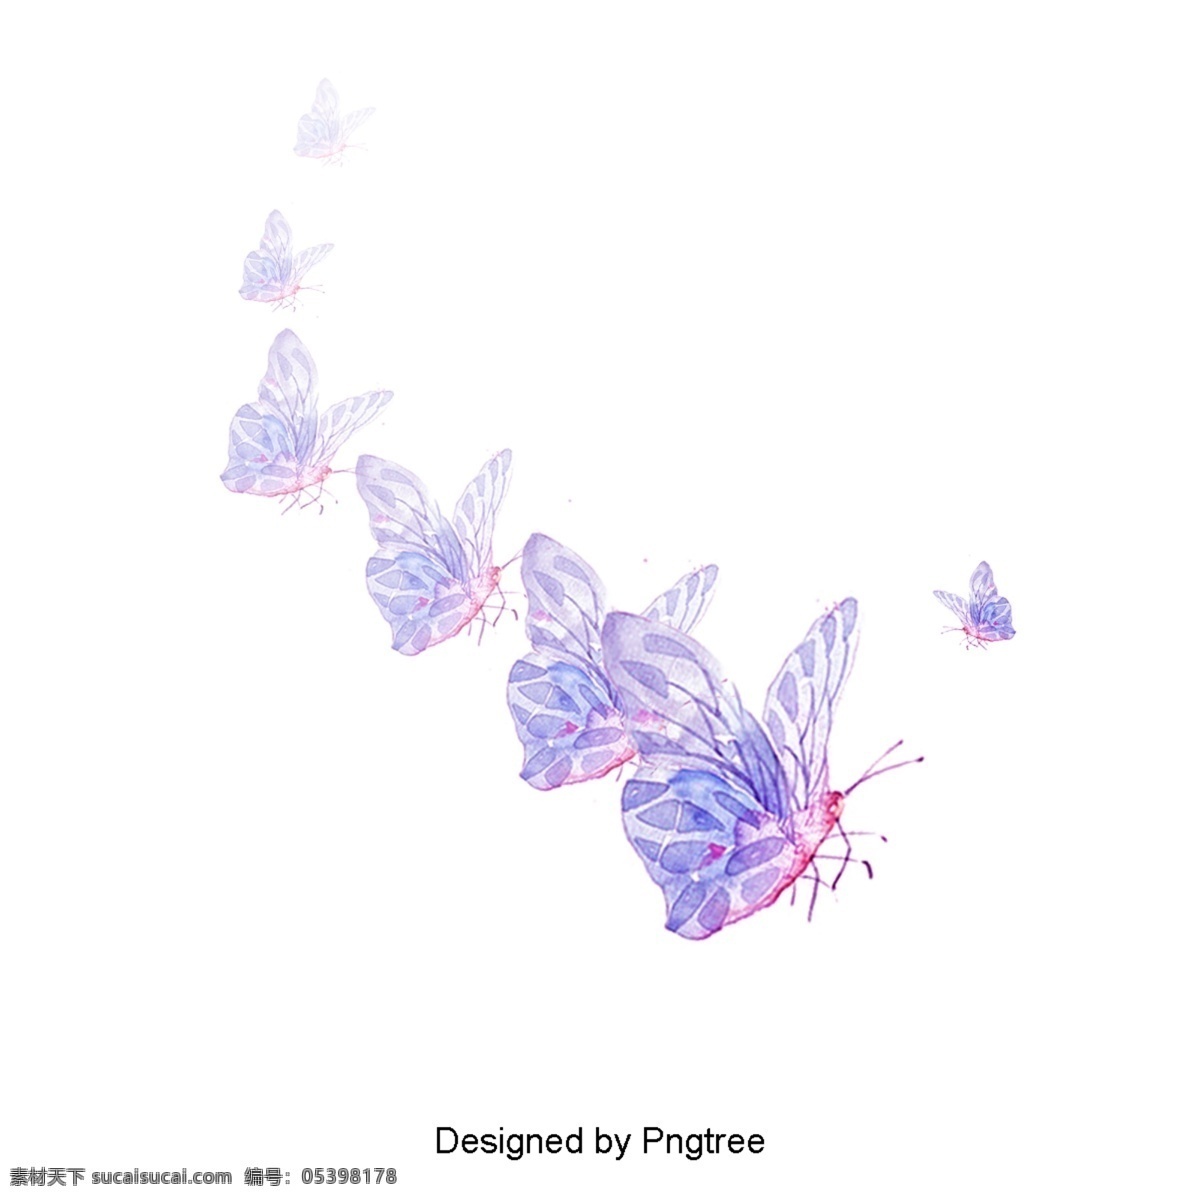 美丽 卡通 蝴蝶 虫 手绘 昆虫 美学 浪漫 图案 花 植物 自然 格拉迪